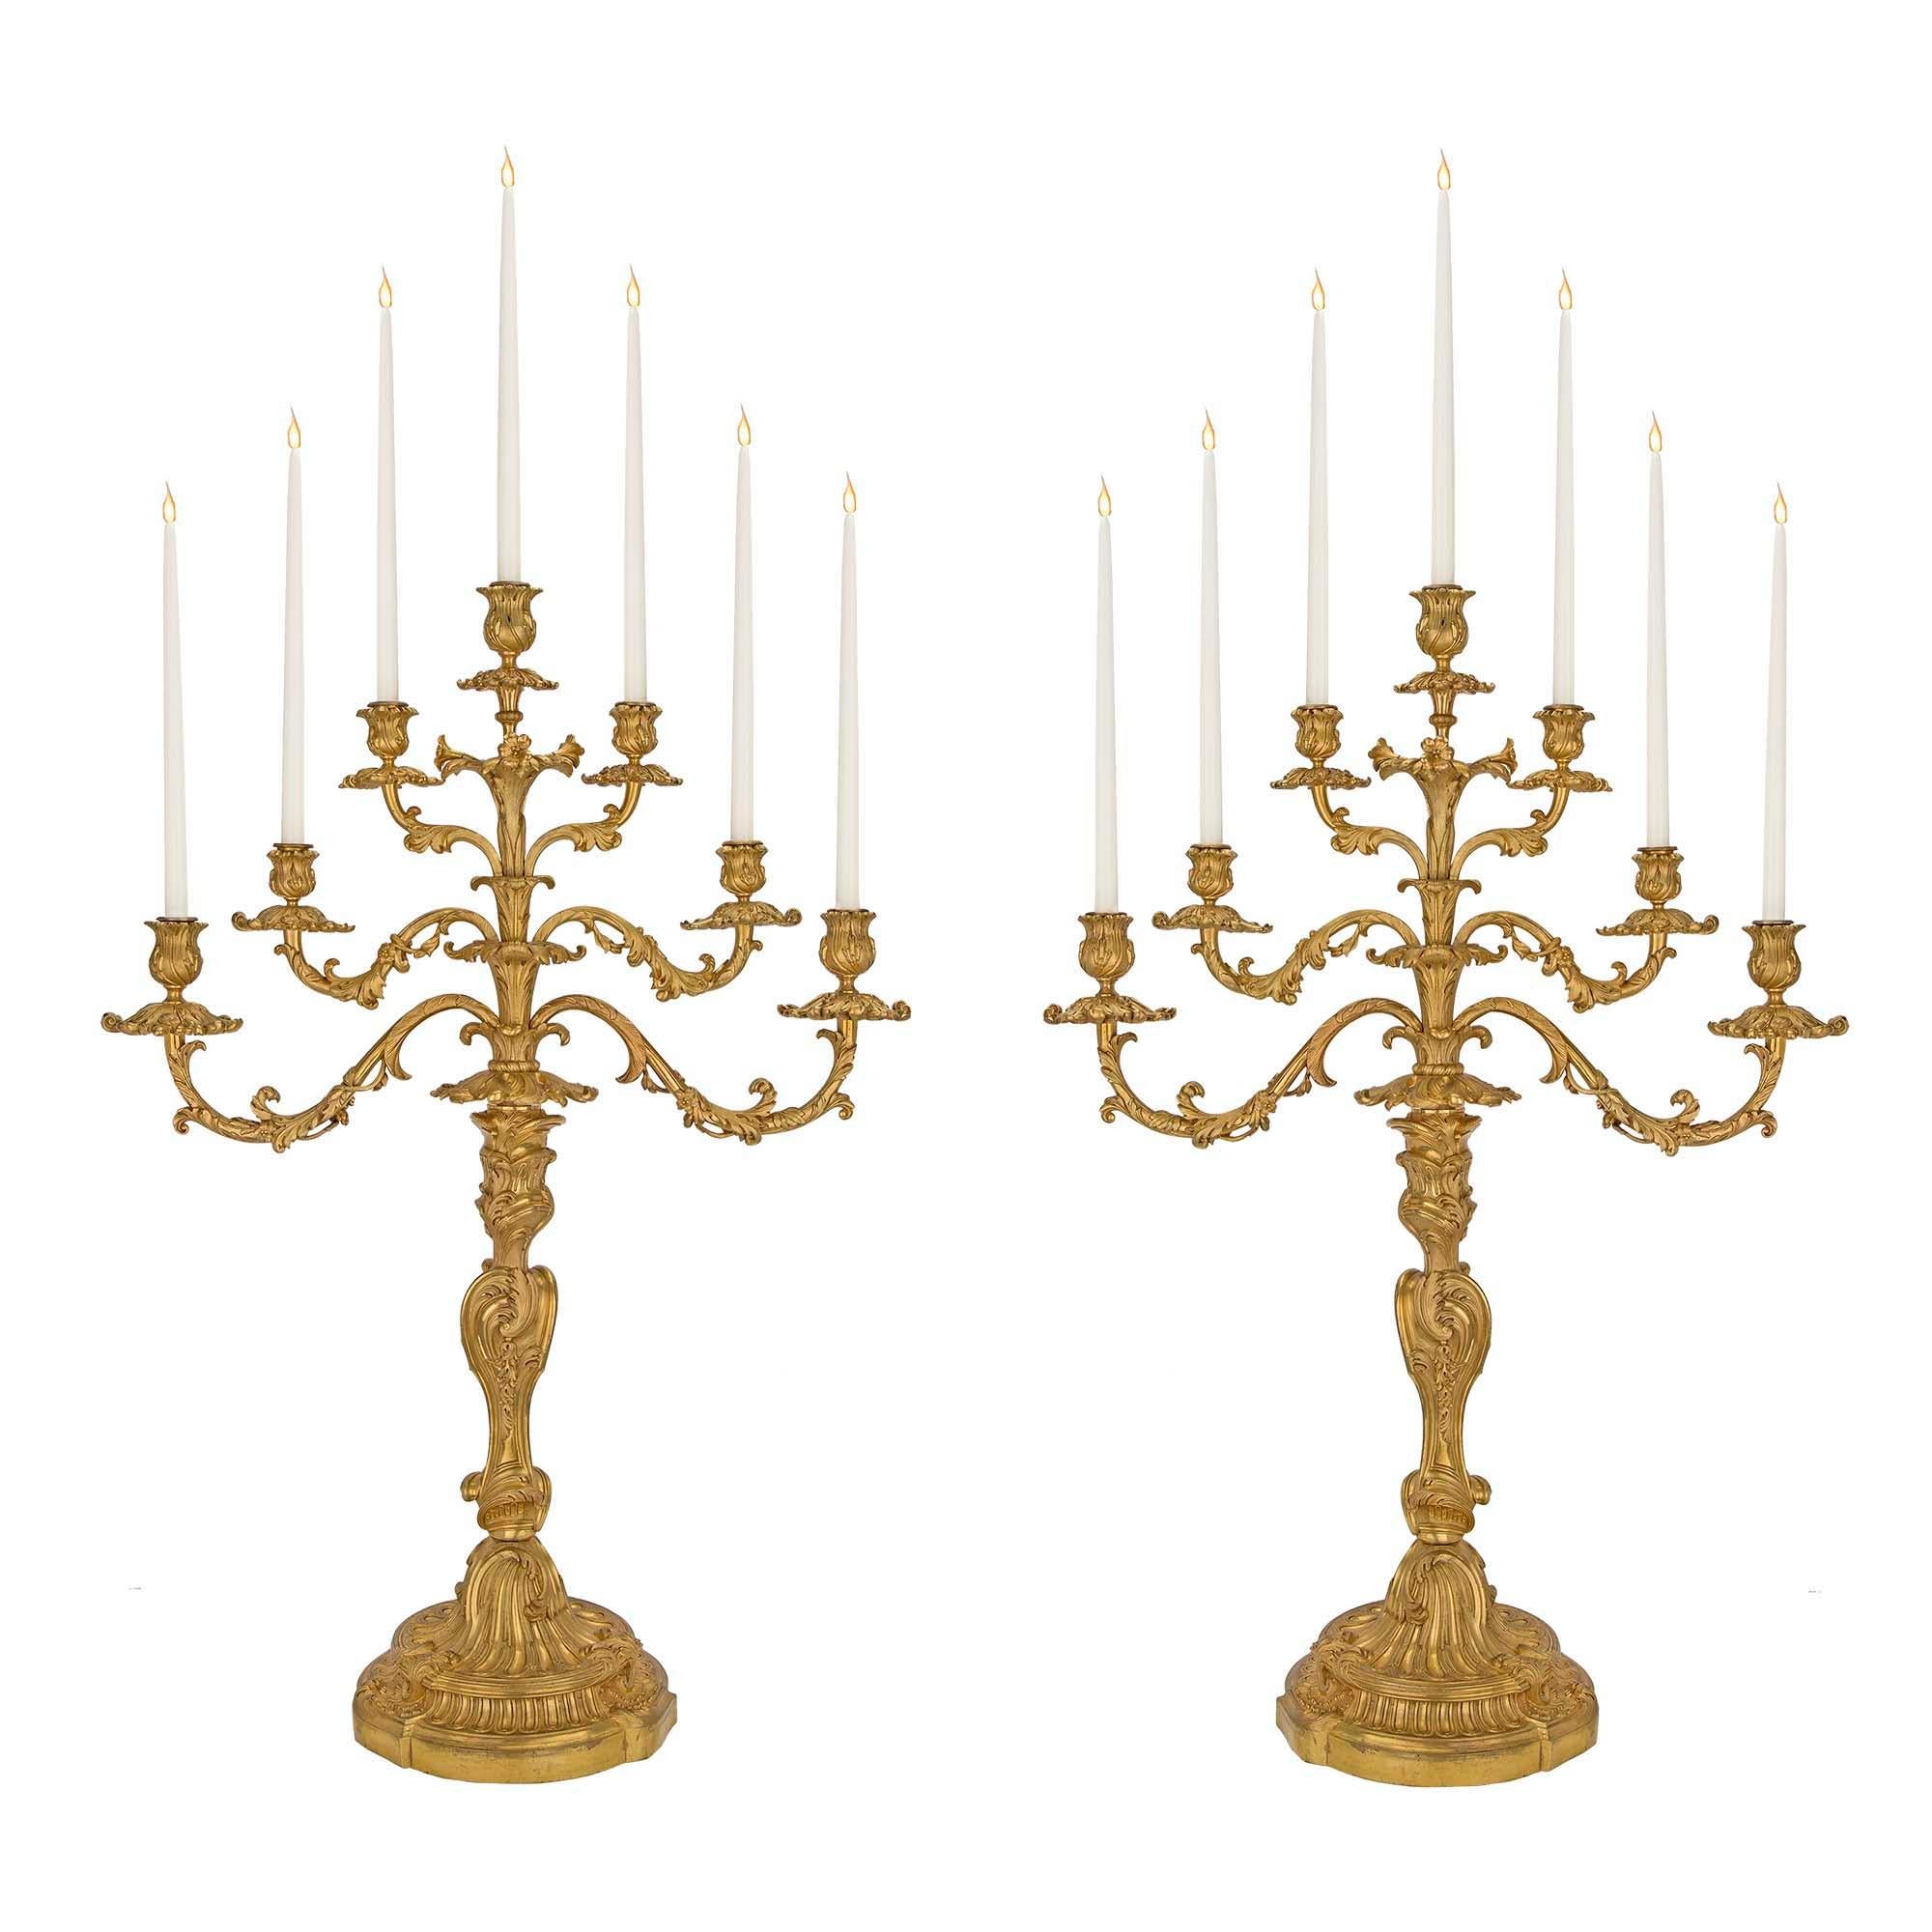 Paire de candélabres en bronze doré du début du XVIIIe siècle de la période de la Rgence française